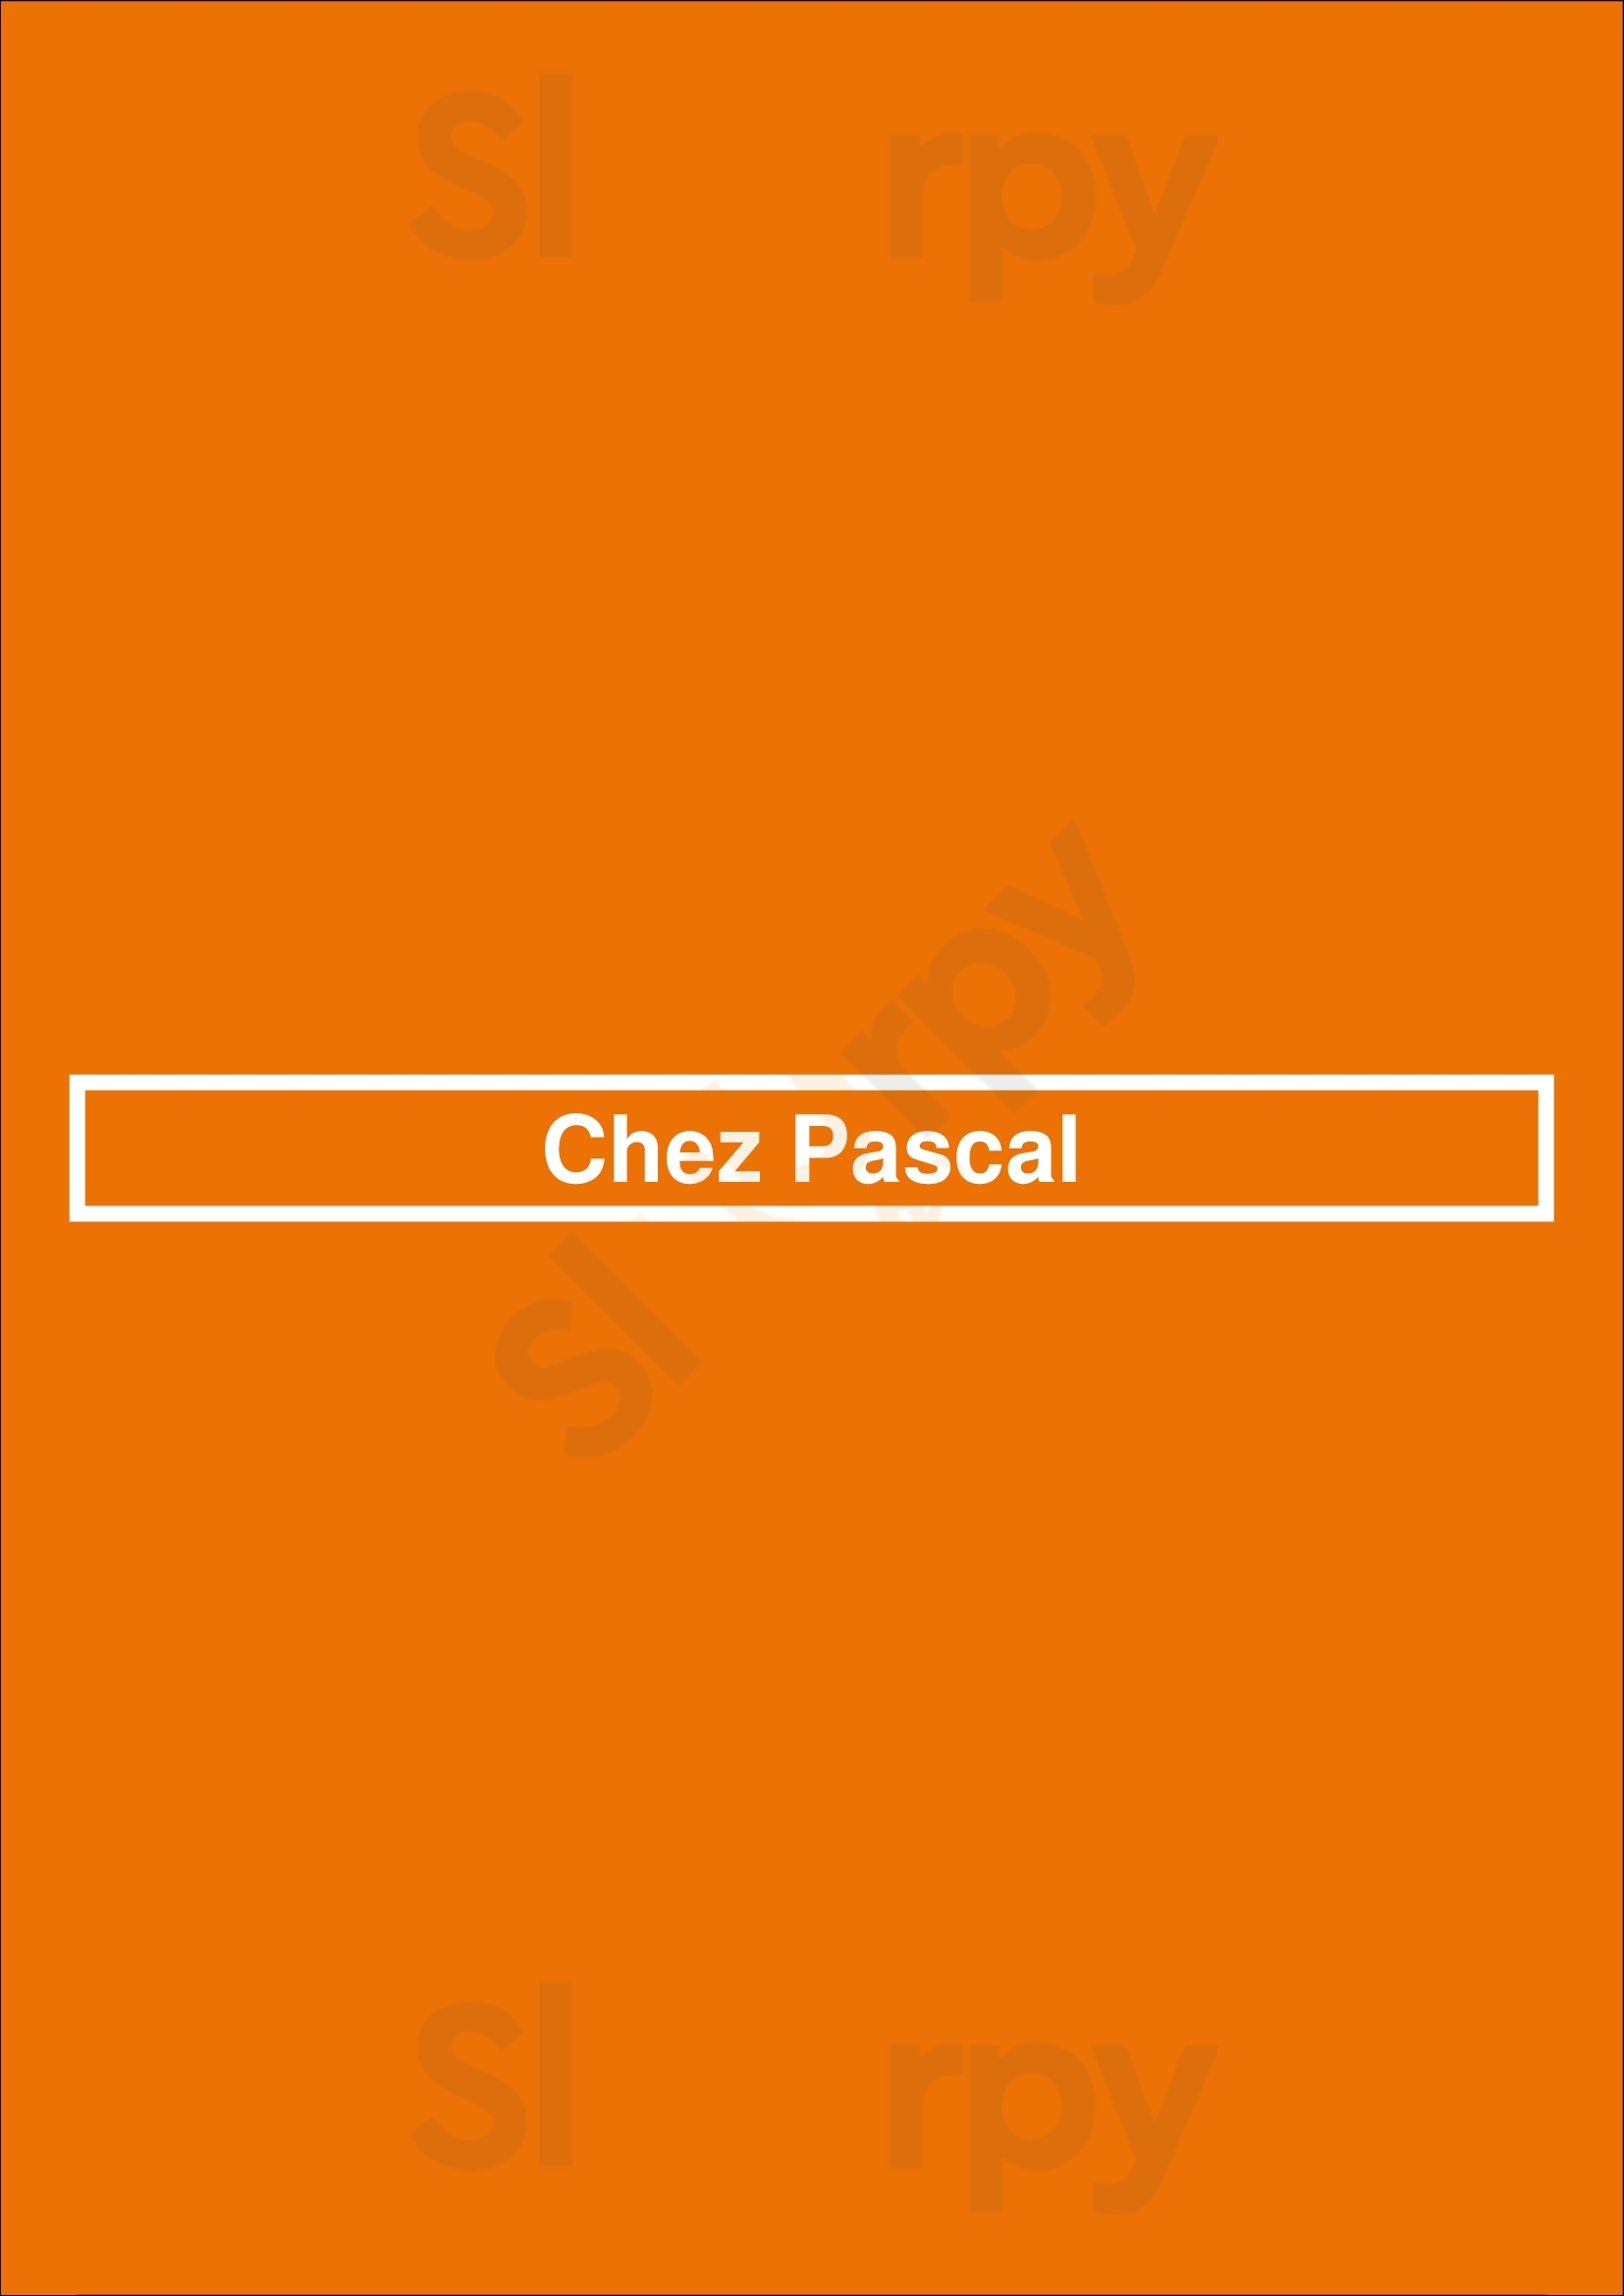 Chez Pascal Paris Menu - 1